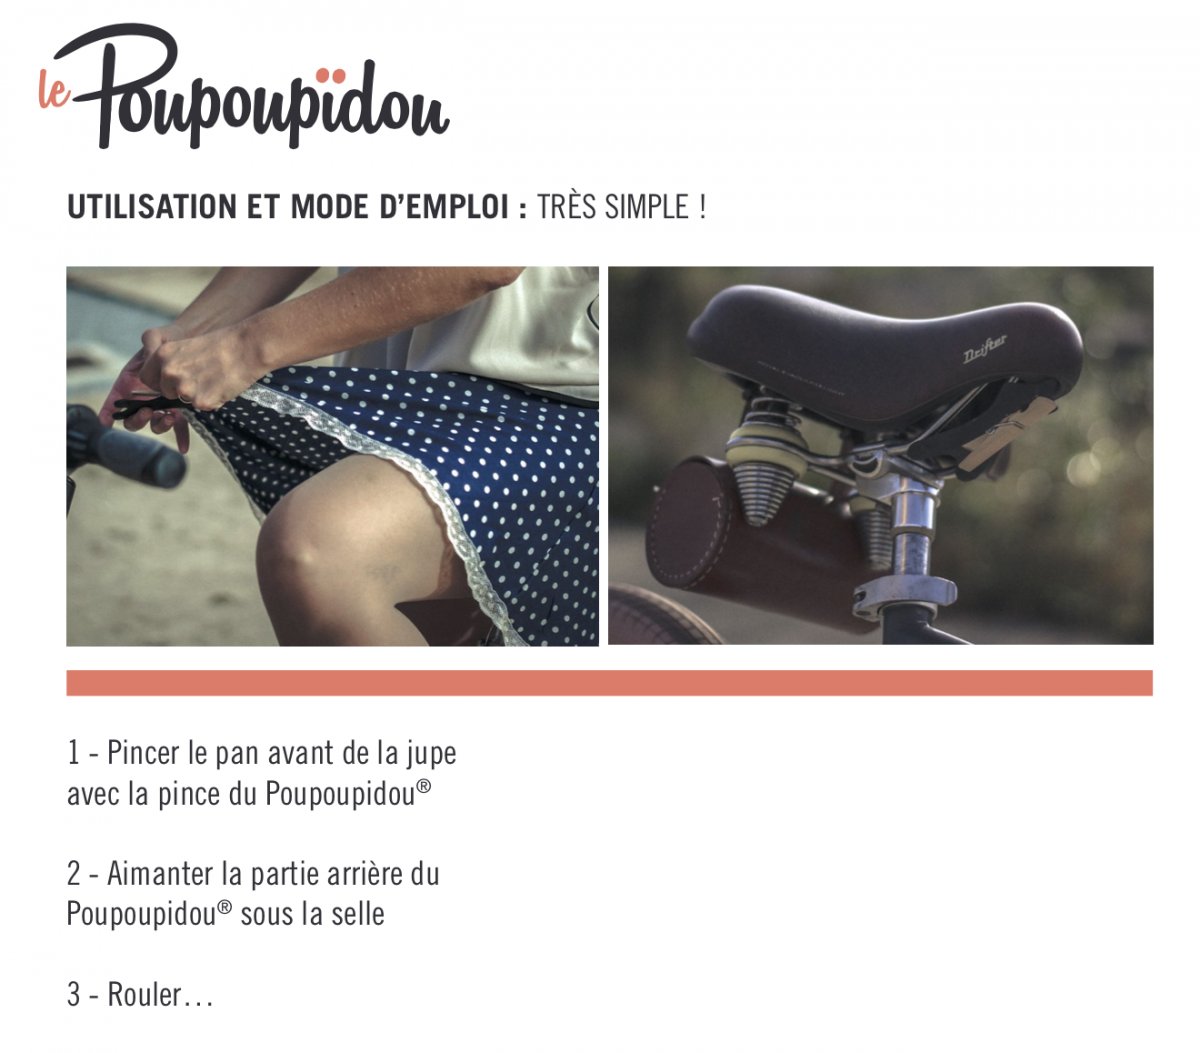 Le Poupoupidou : une pince à jupe adaptée au vélo !